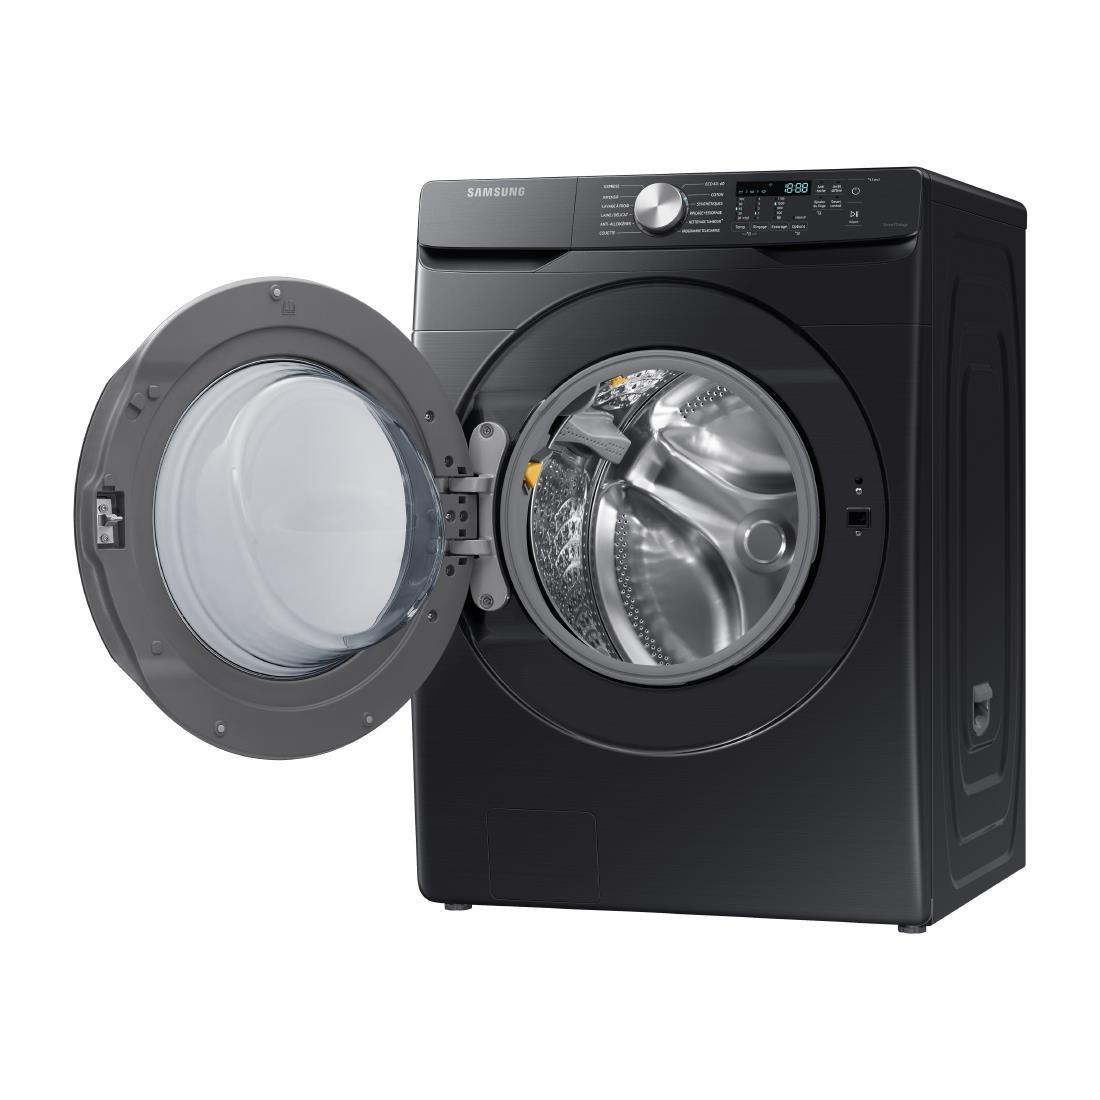 Large Capacity Washing Machine WF18T8000GV/EU